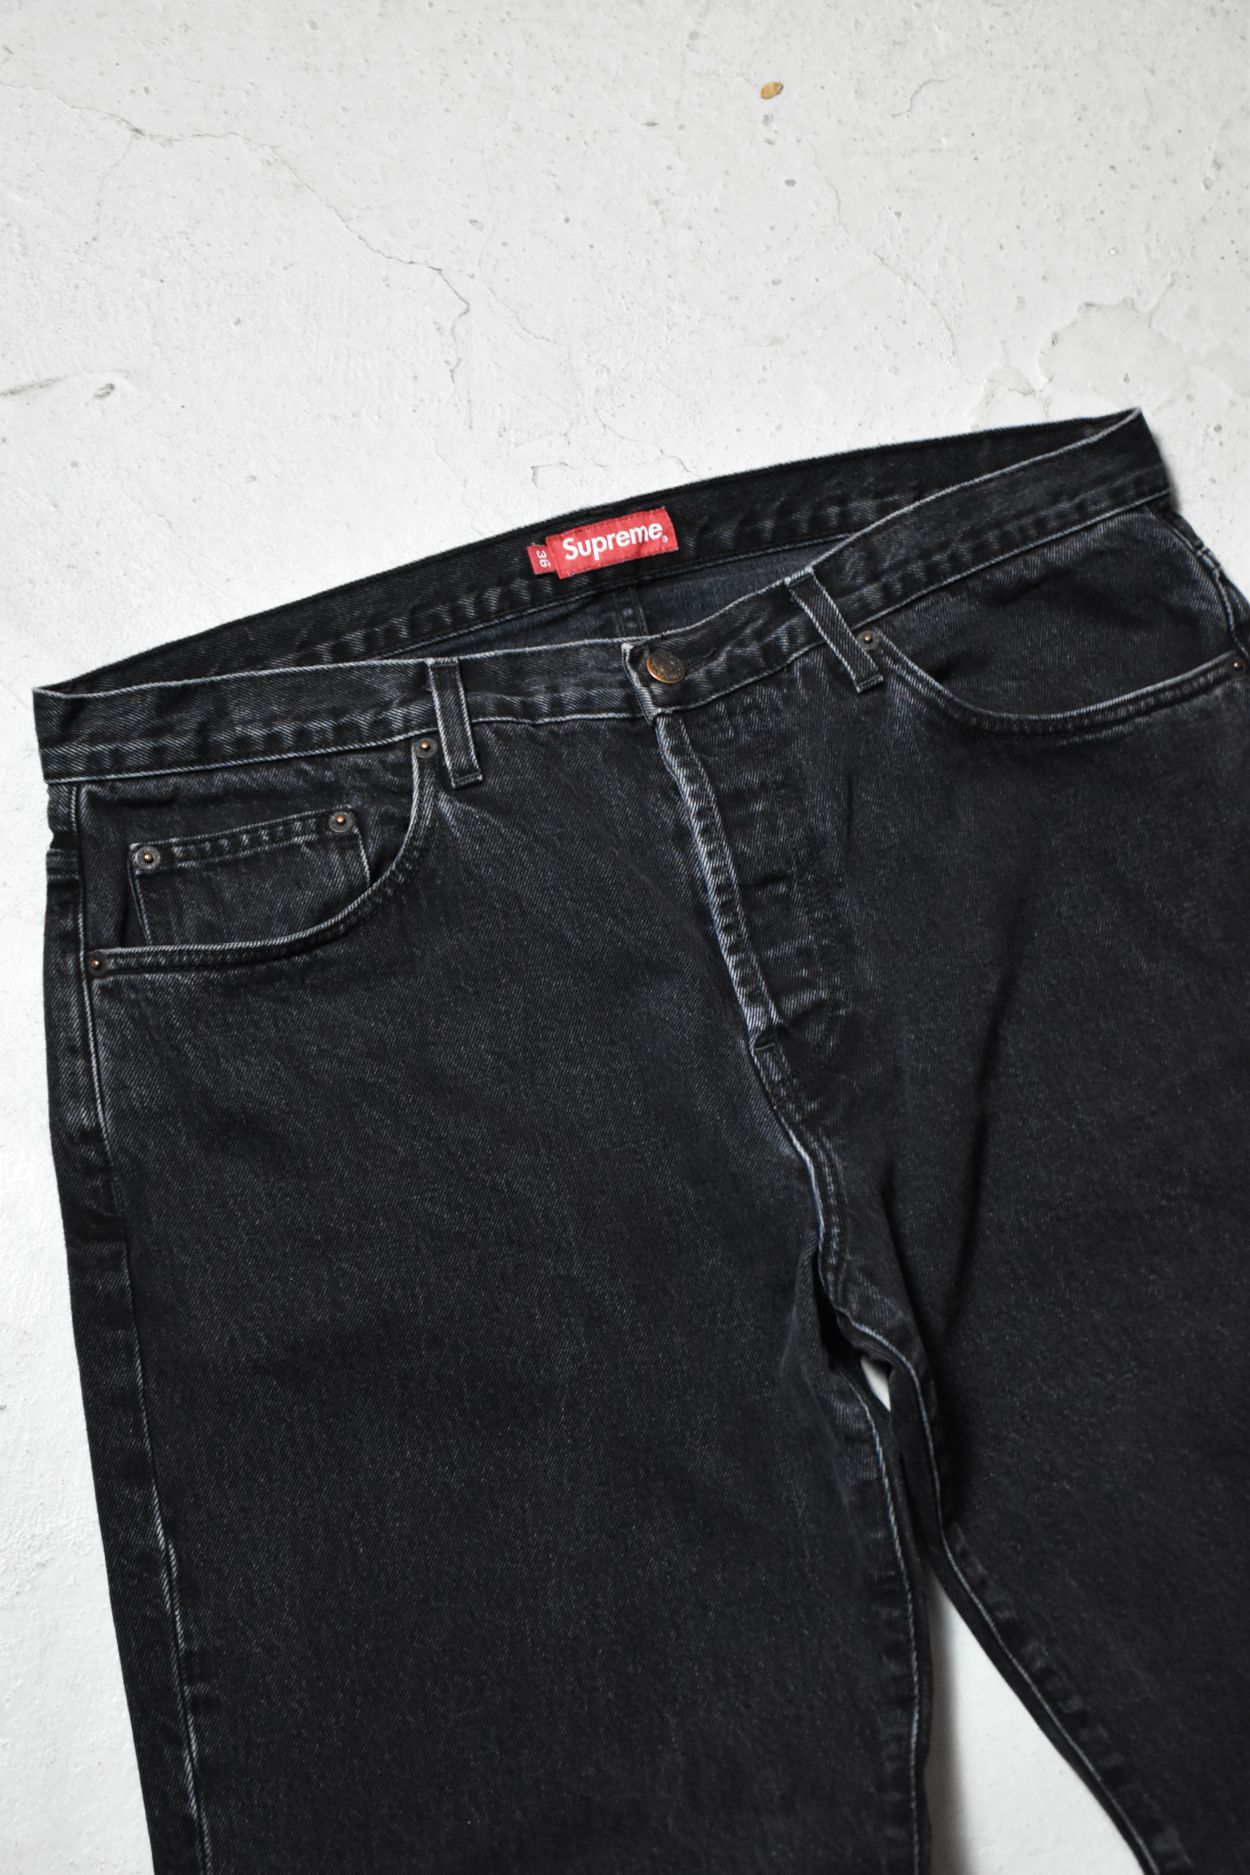 Supreme Supreme Washed Regular Jeans Black | Grailed